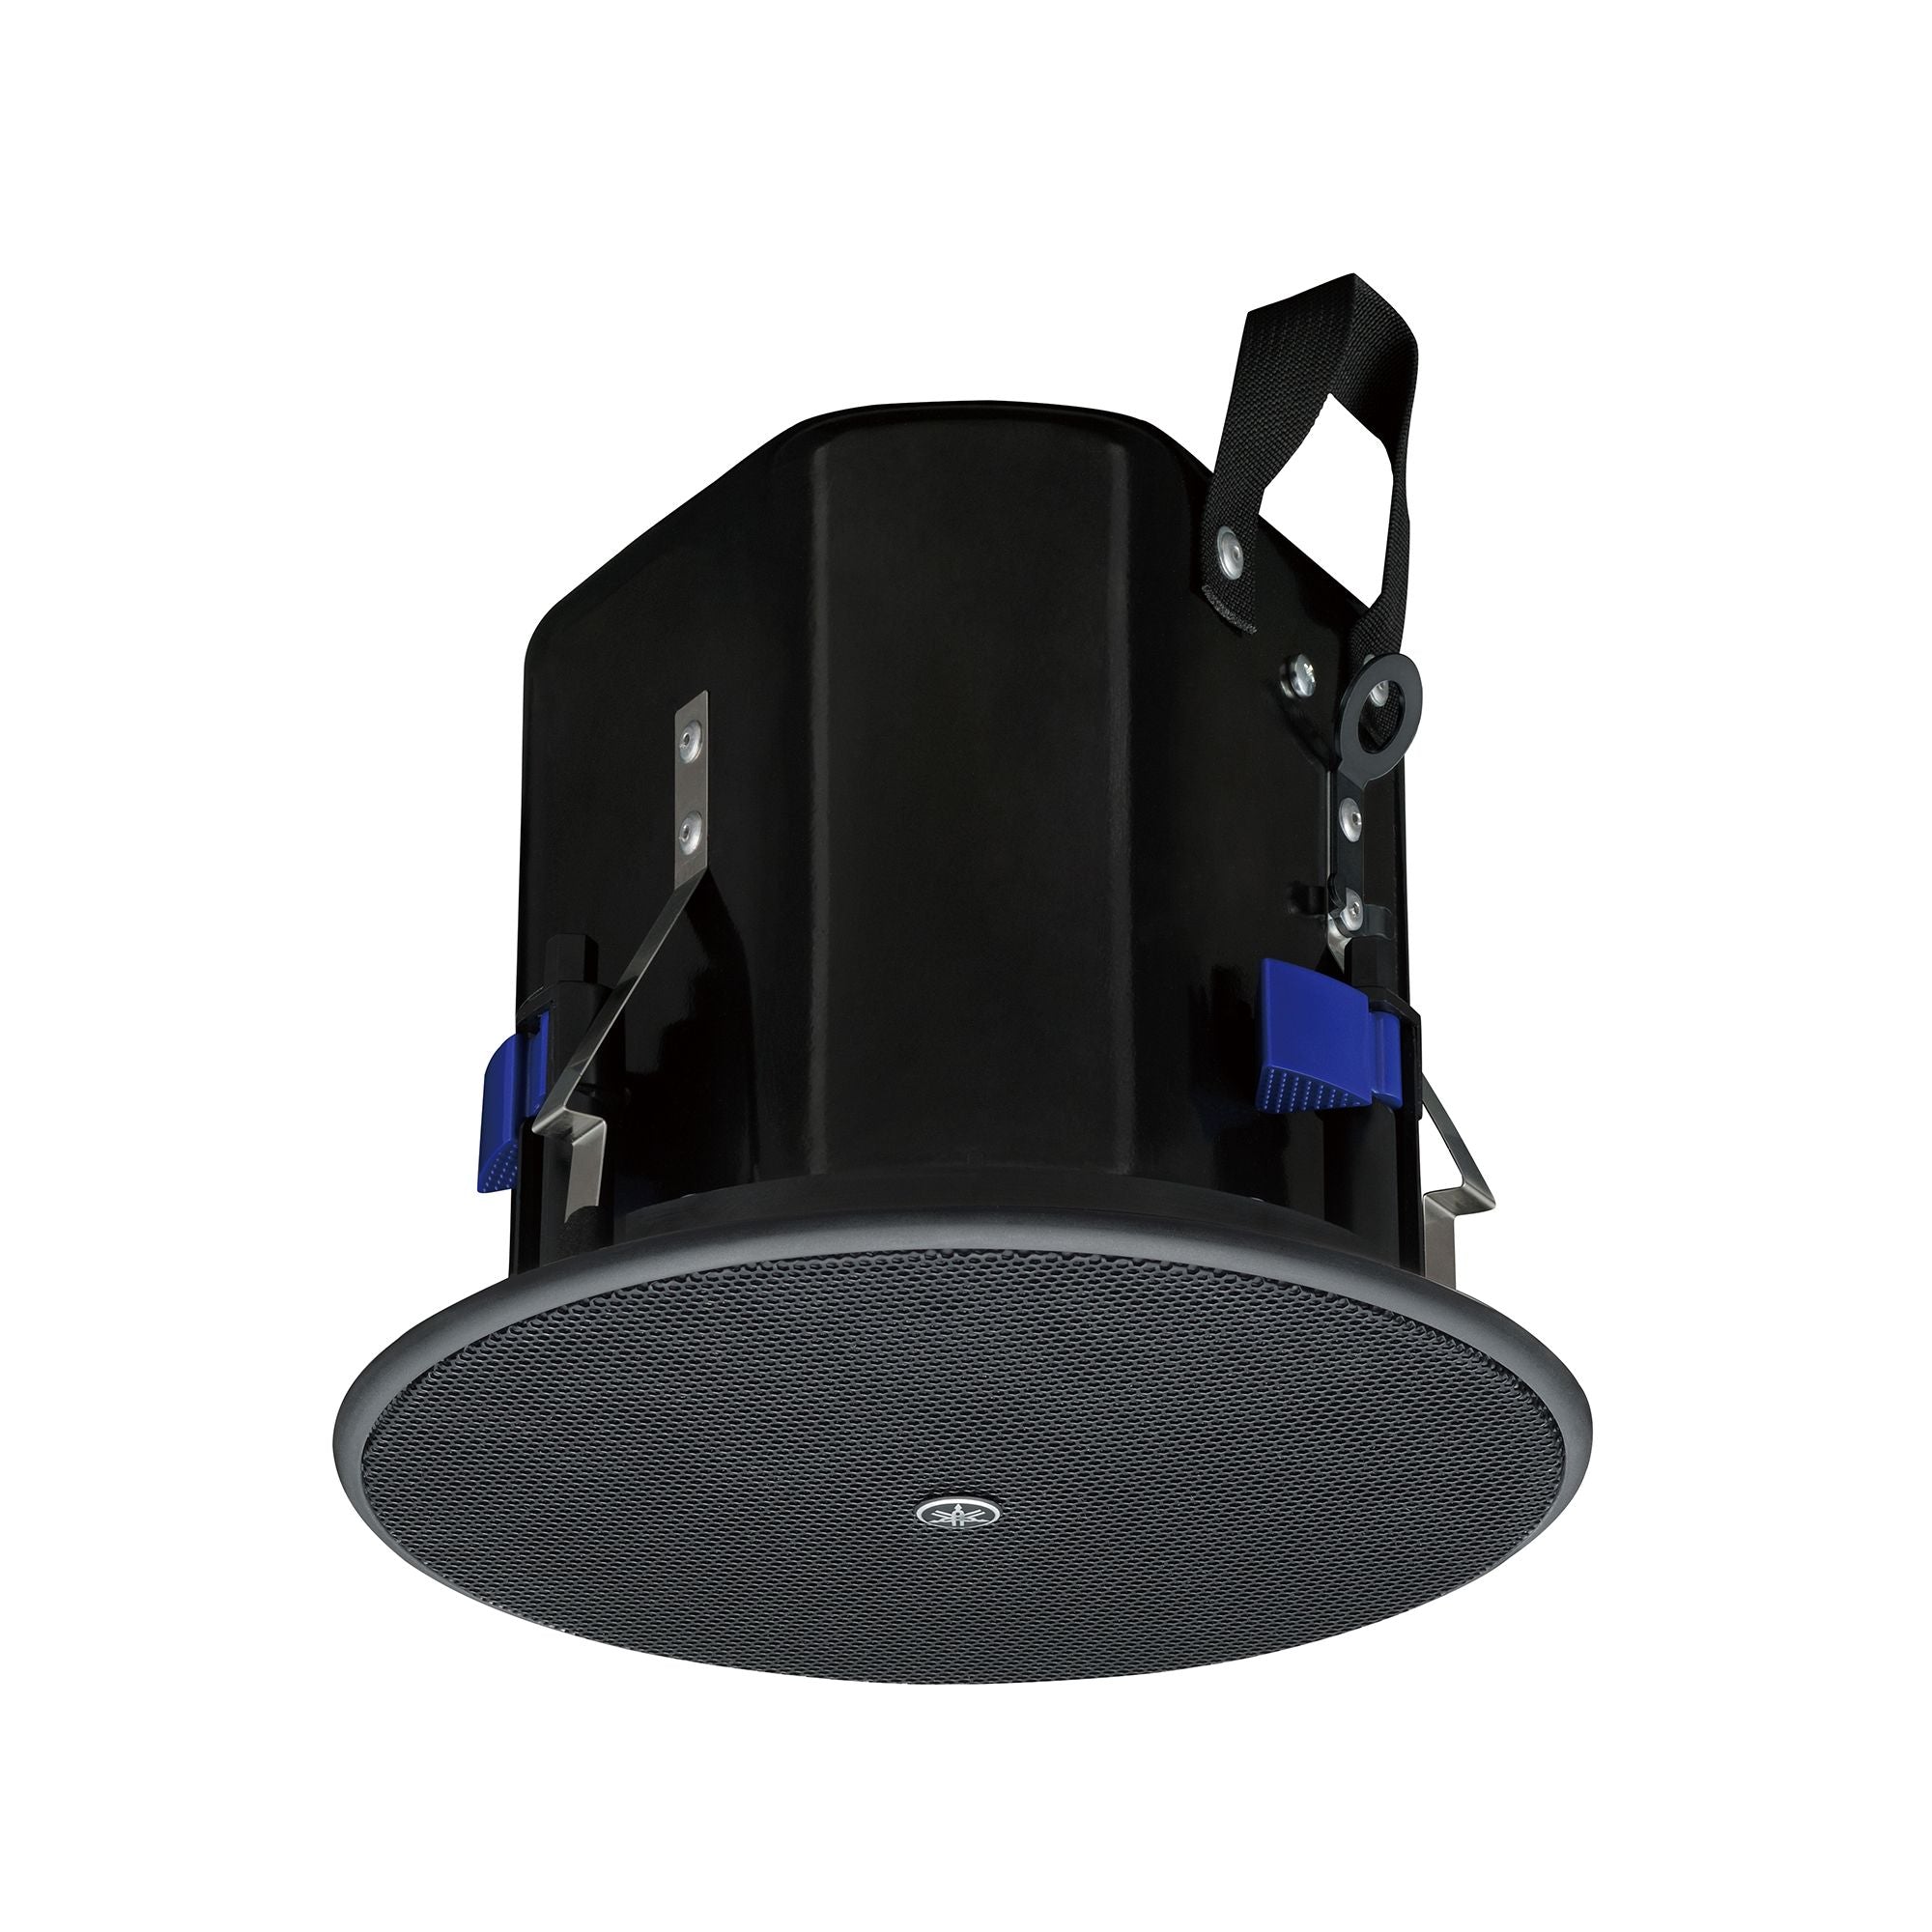 Yamaha VXC4  Ceiling speaker full-range loudspeaker with a 4" driver